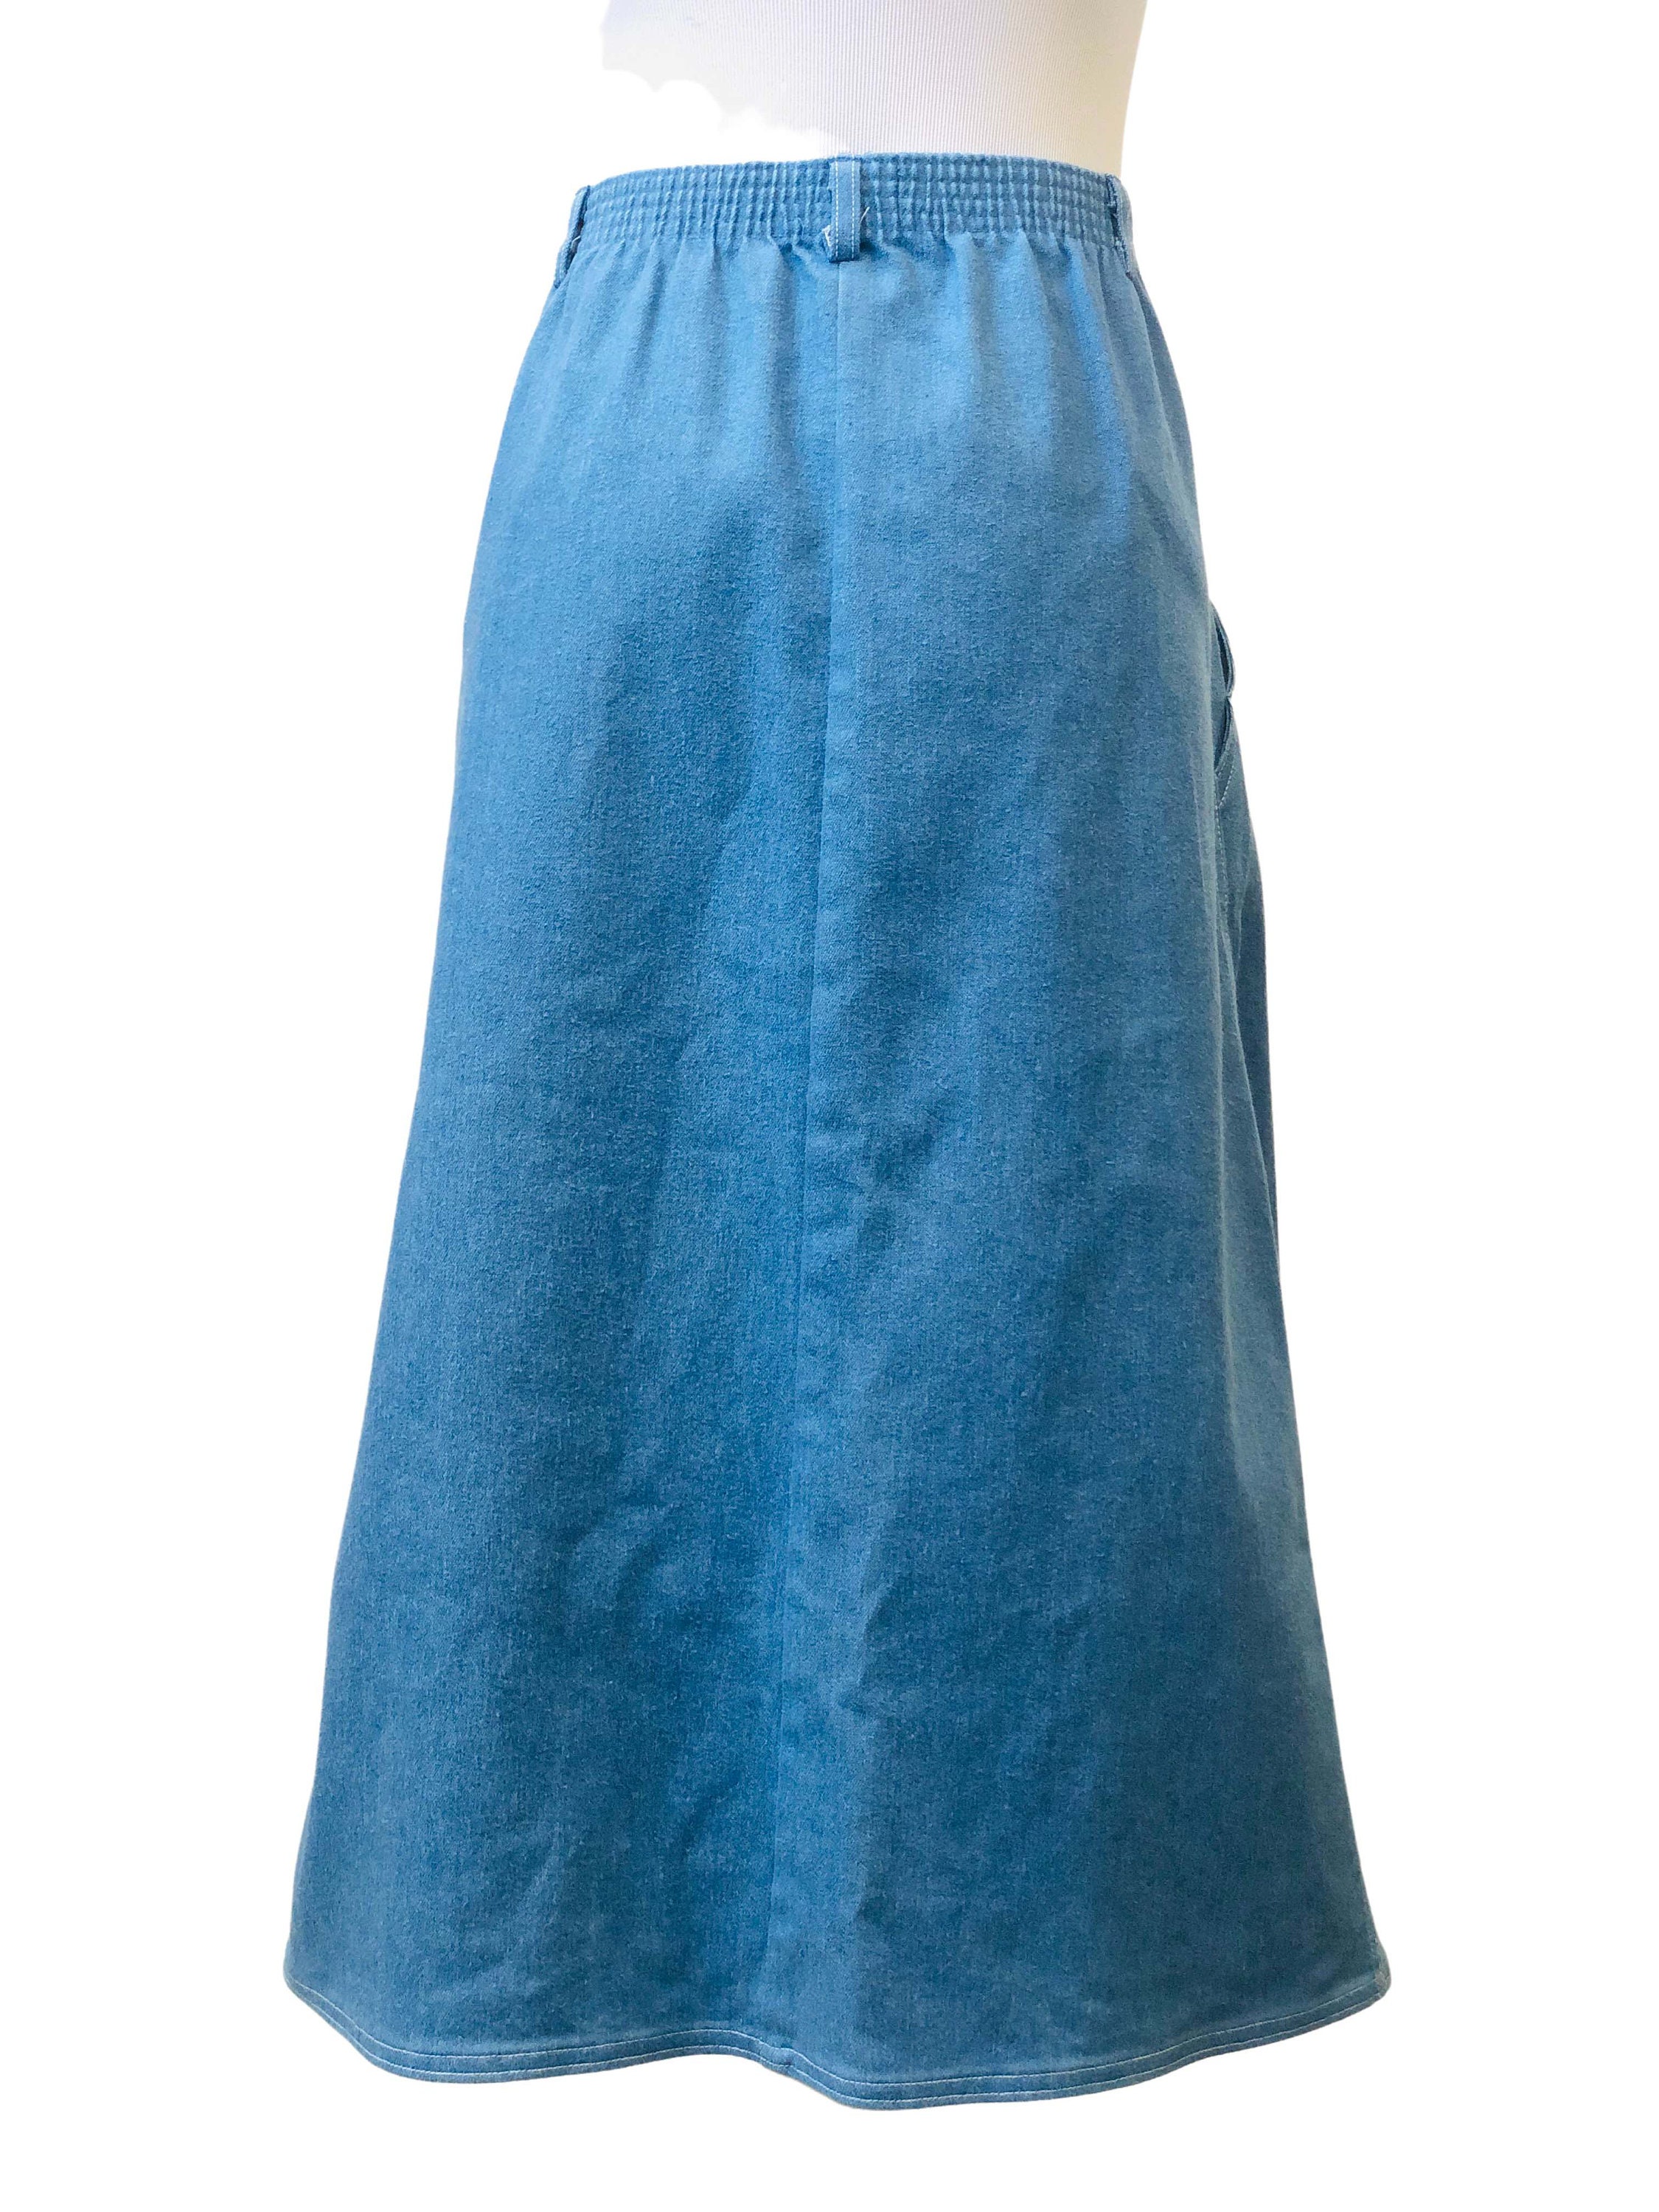 Vintage 1970's Koret Denim A-line Skirt | Etsy